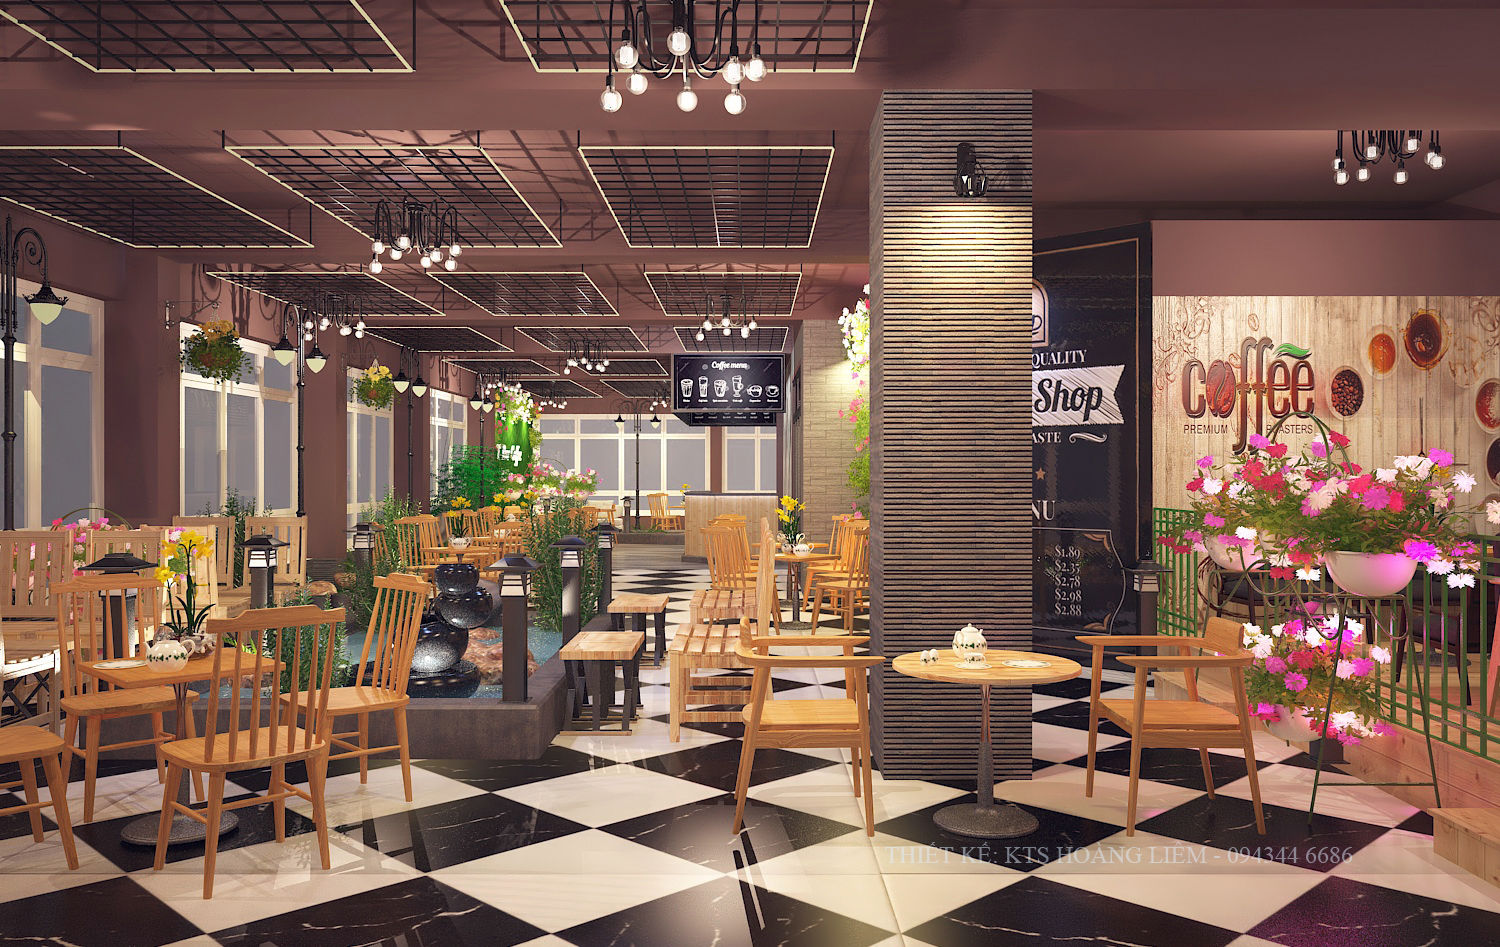 Thiết kế nội thất Cafe tại Vĩnh Phúc Thiết kế không gian cafe Vĩnh Phúc 1576581383 3